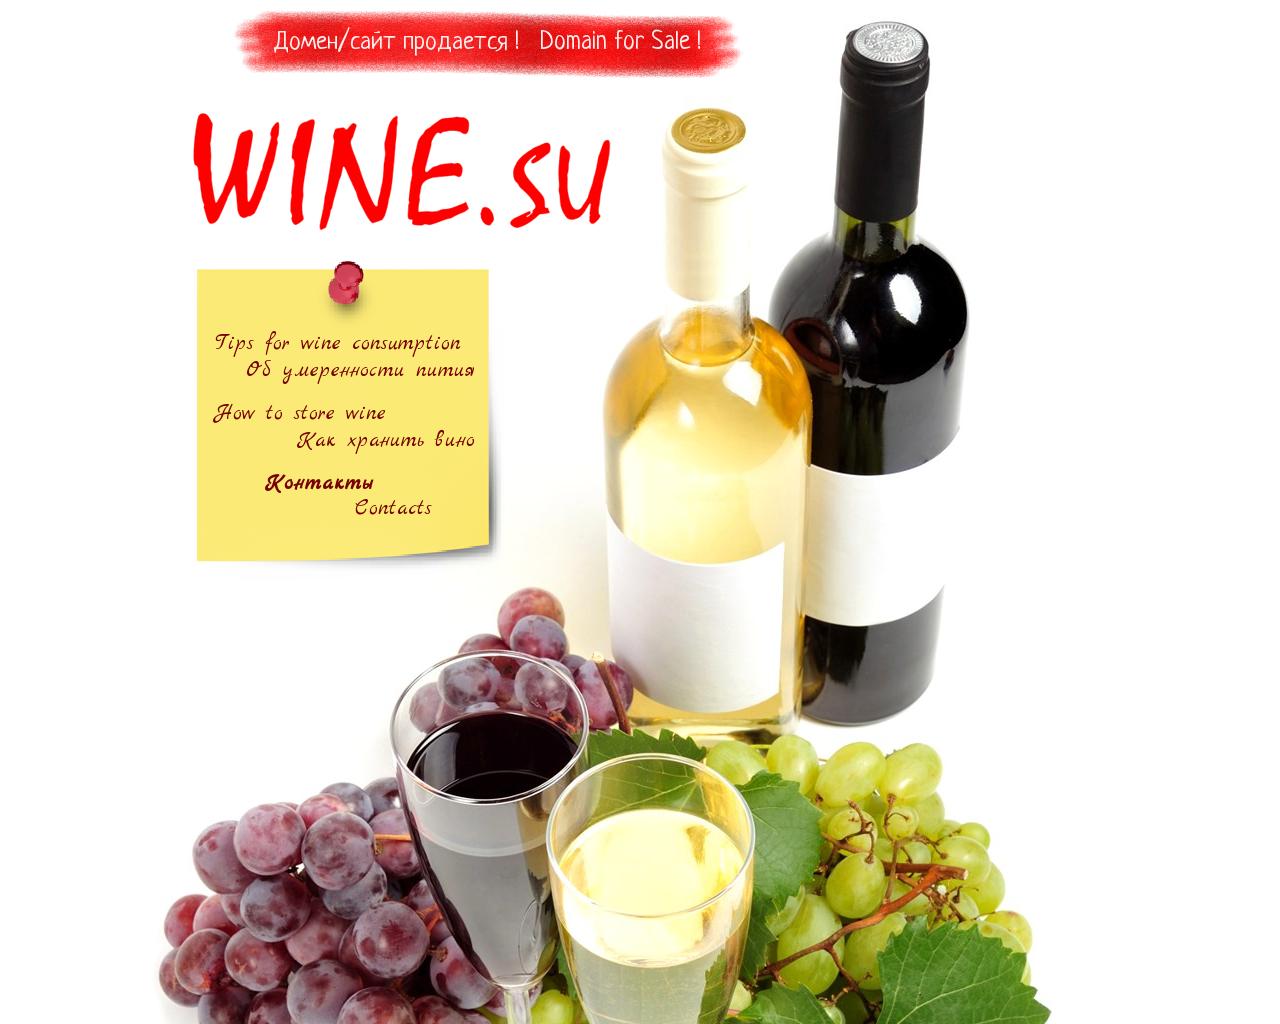 Вино мовементо. Лучшие сайты про вино. Мега Спилео вино. Ворсао вино. Каталог вин сайт